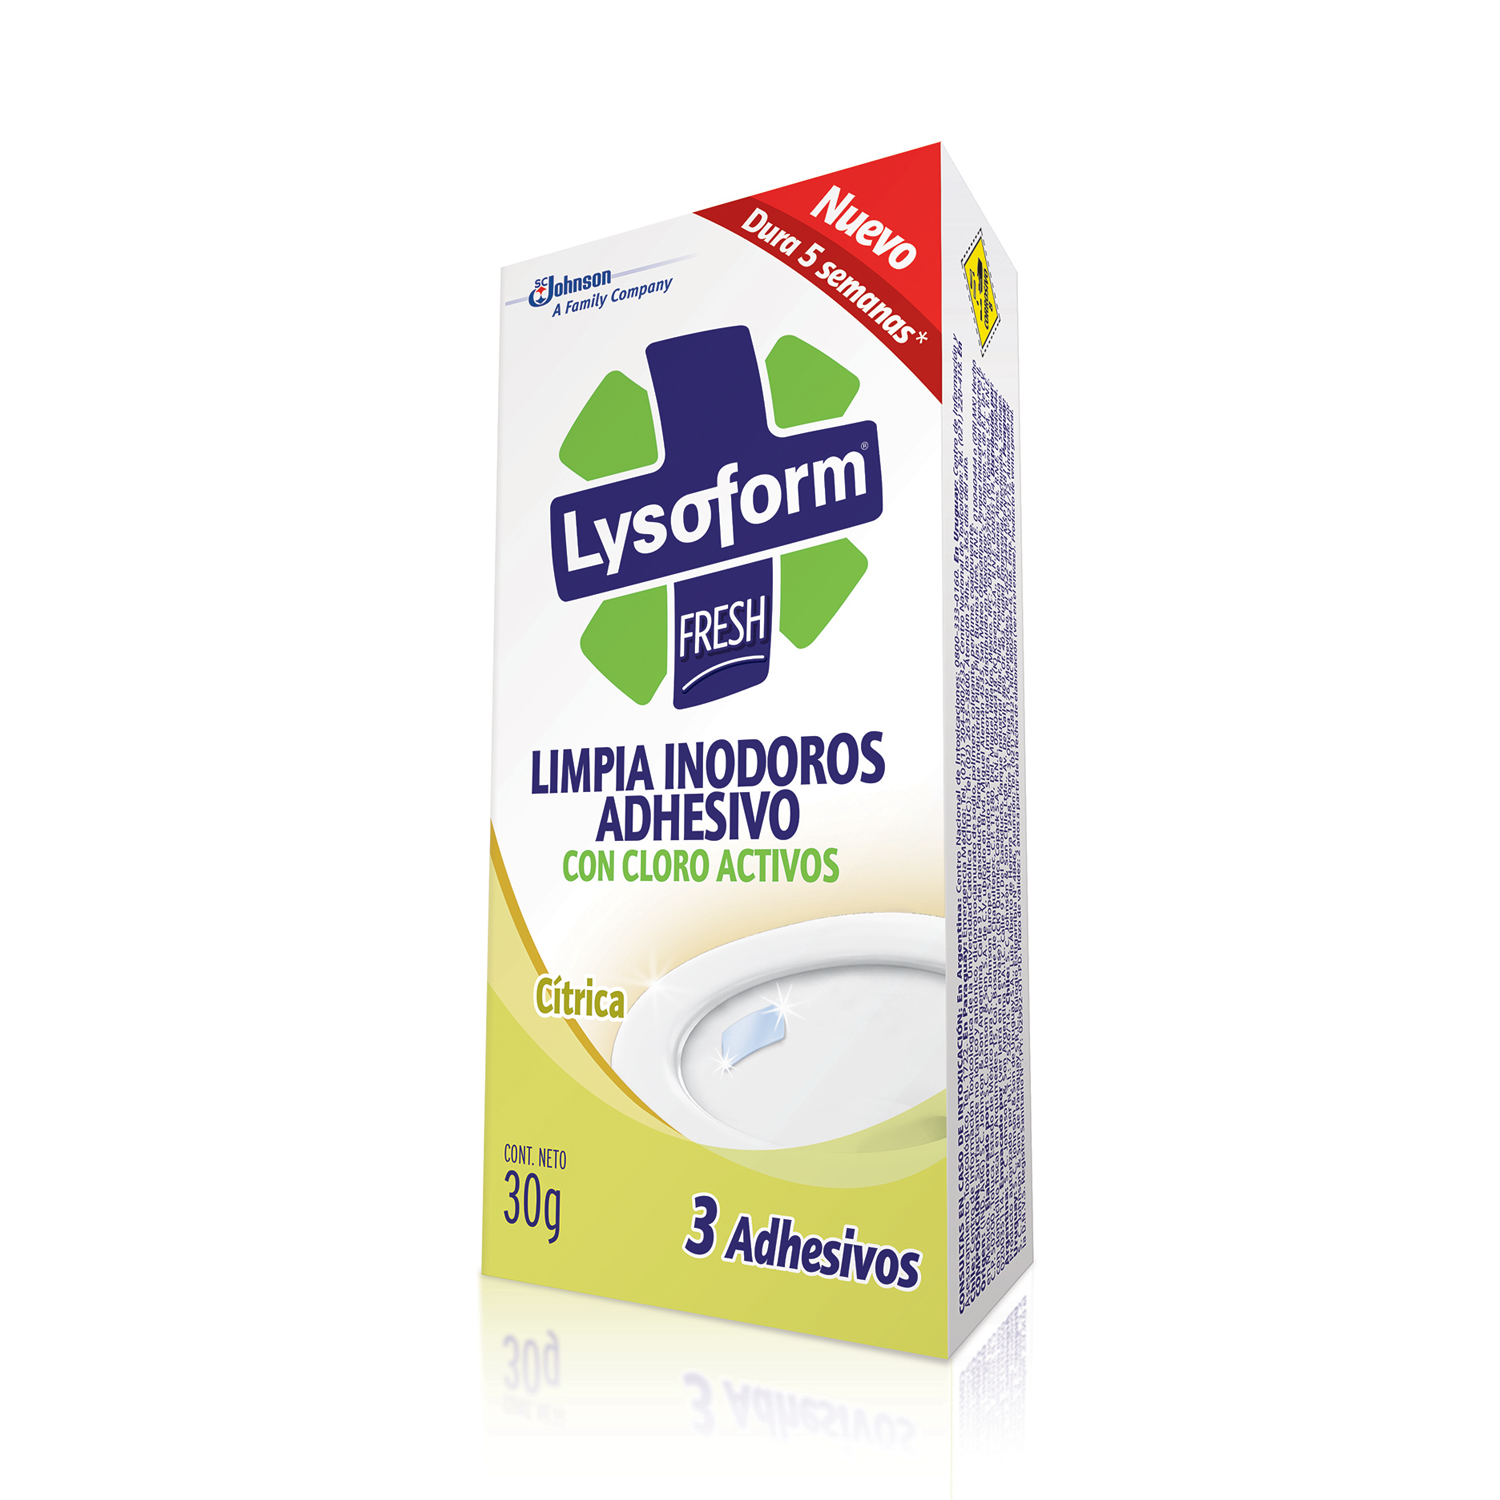 Lysoform® Limpia Inodoros Adhesivo Citrica